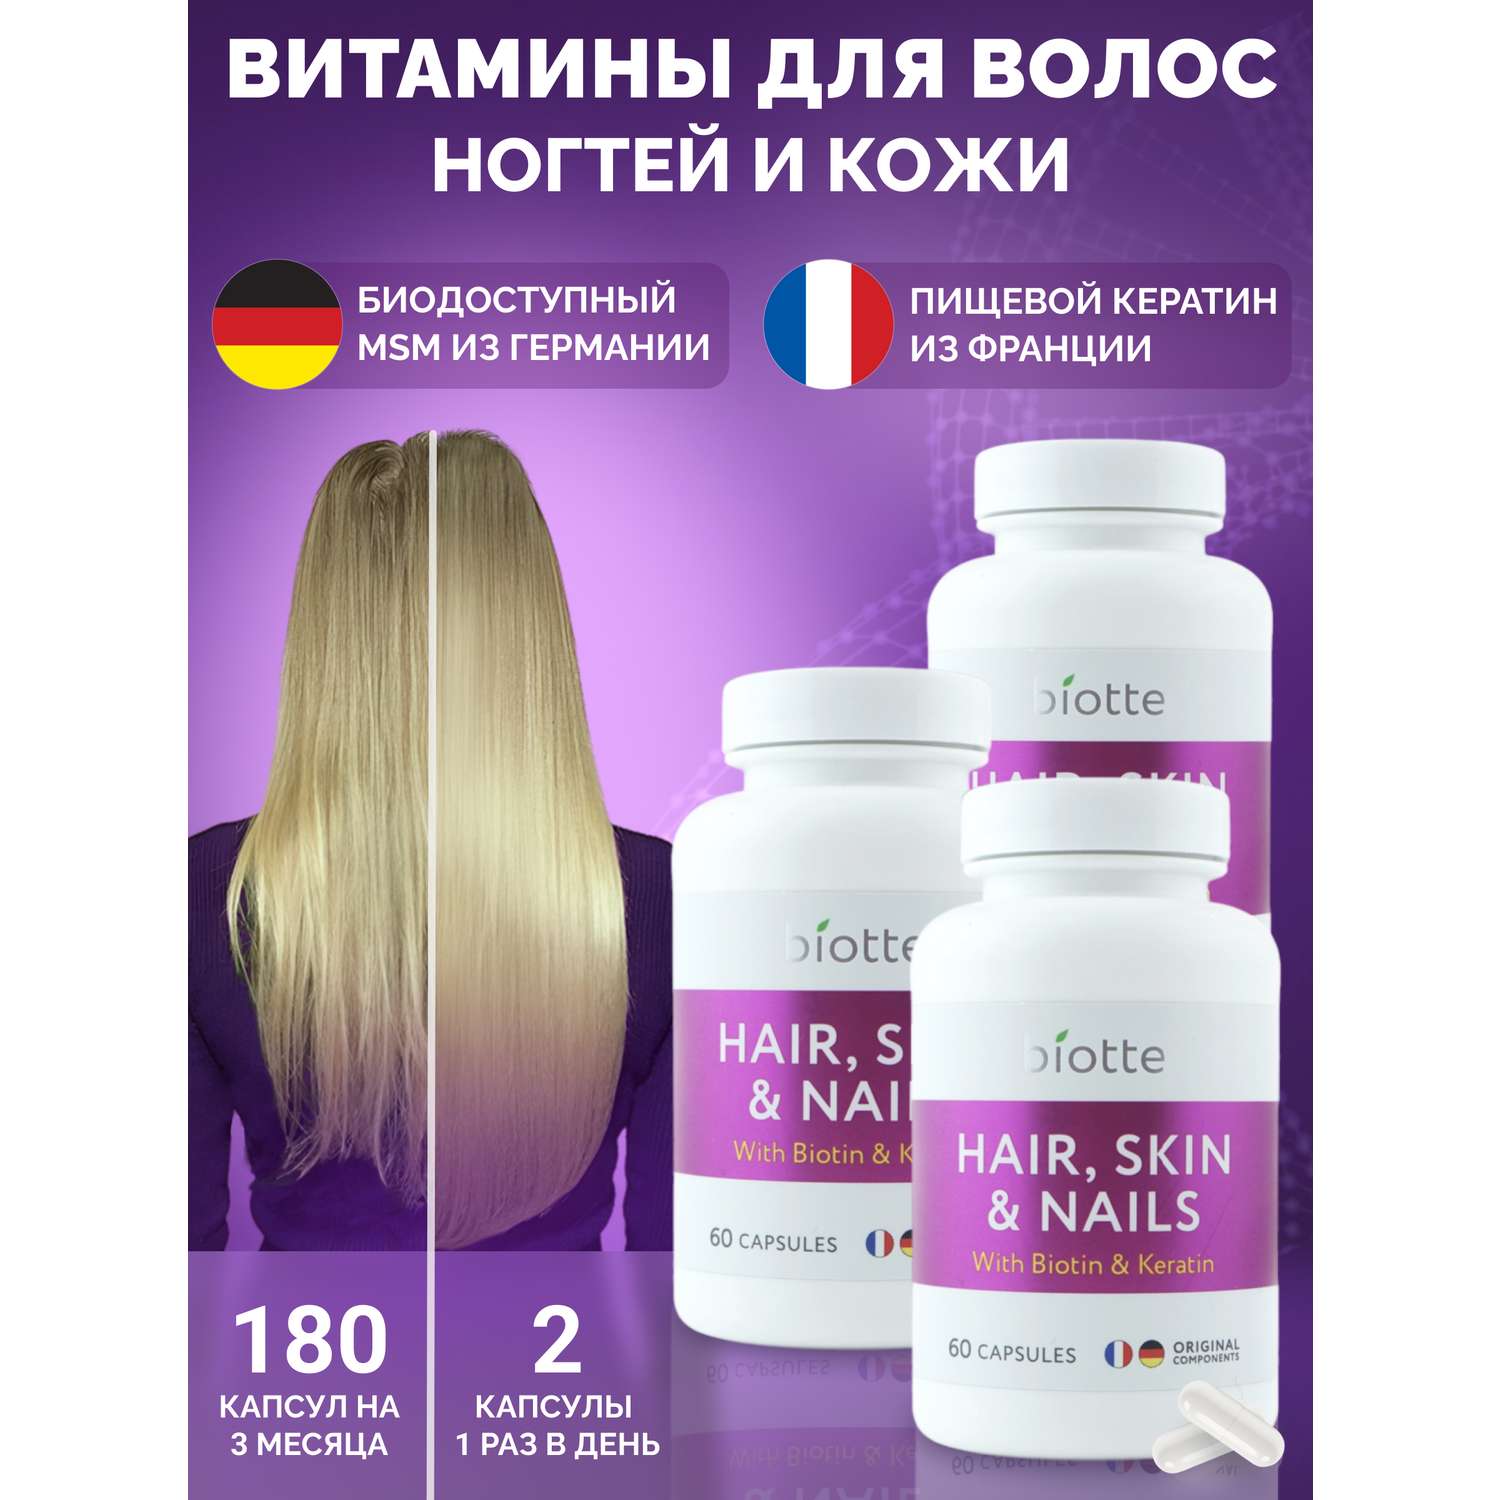 Витамины для волос кожи ногтей BIOTTE hair nails skin витаминно-минеральный комплекс БАД 180 капсул - фото 1